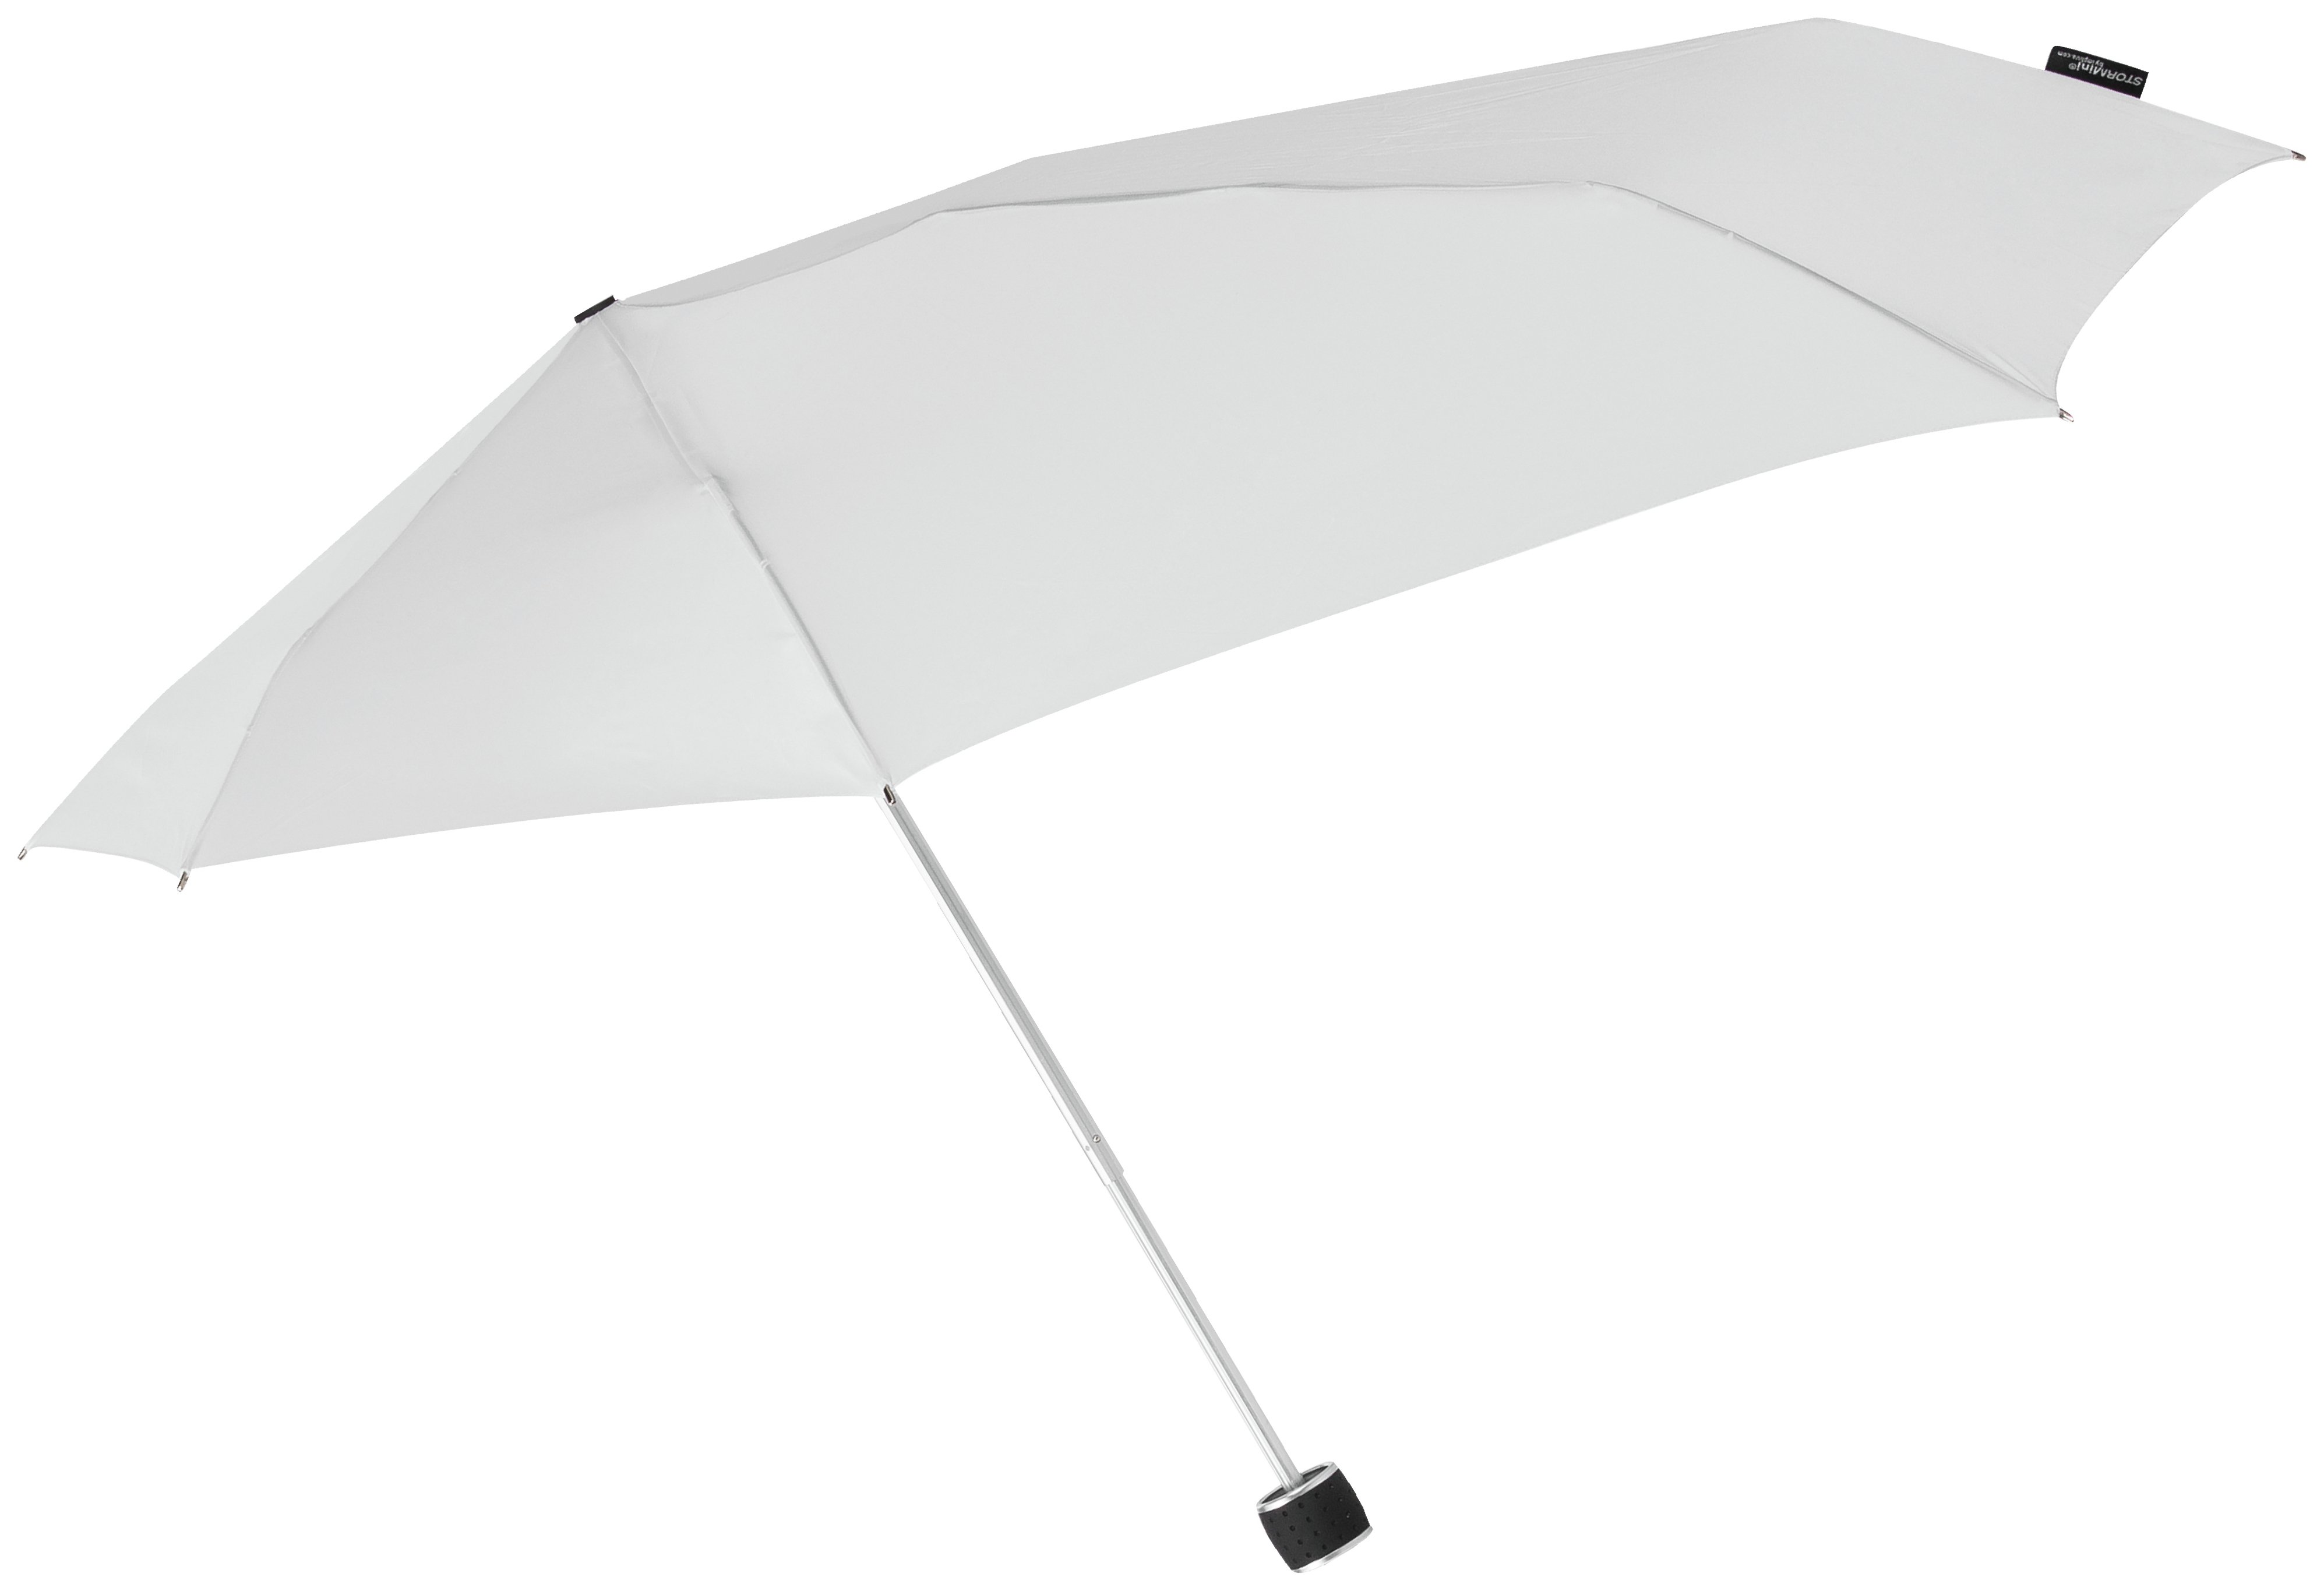 Stealthbomber Folding Umbrella - White.